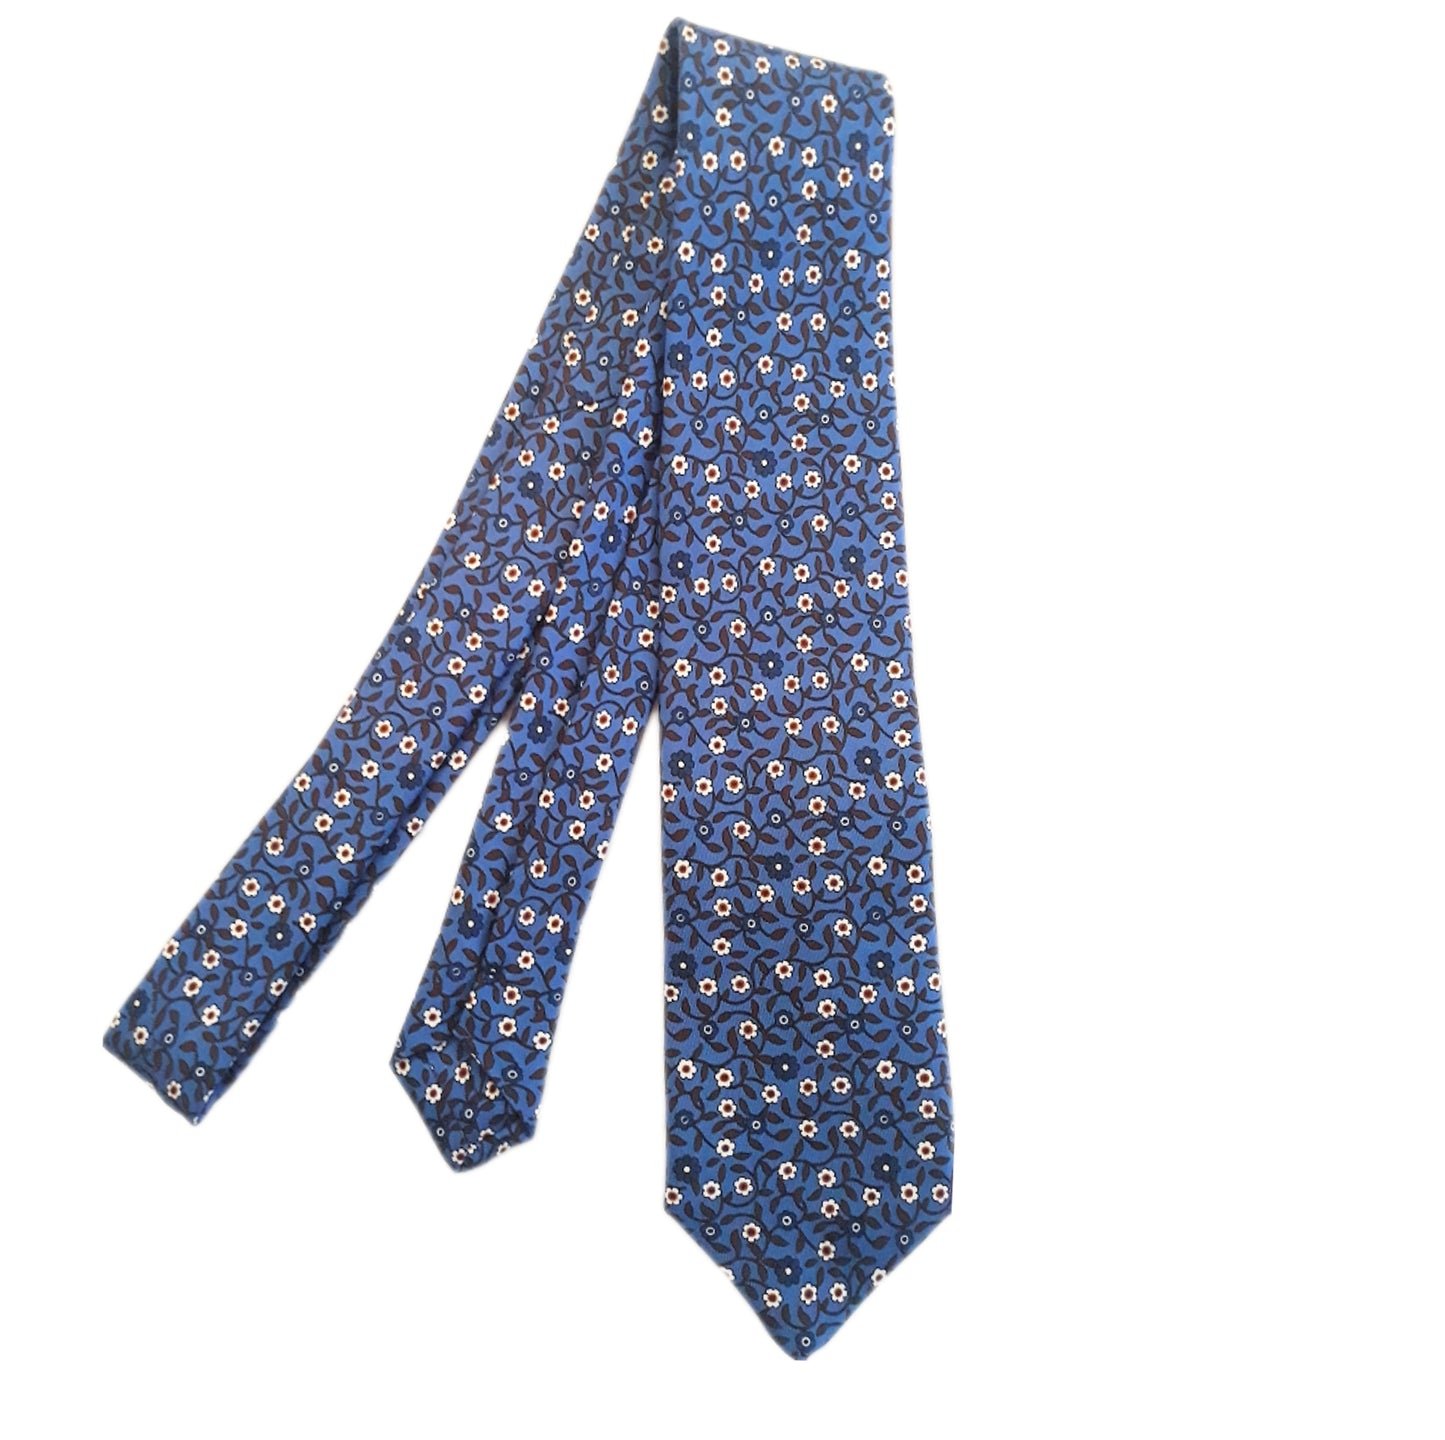 Cravatta blue a fantasia con i fiori 3 pieghe di pura seta fatta a mano